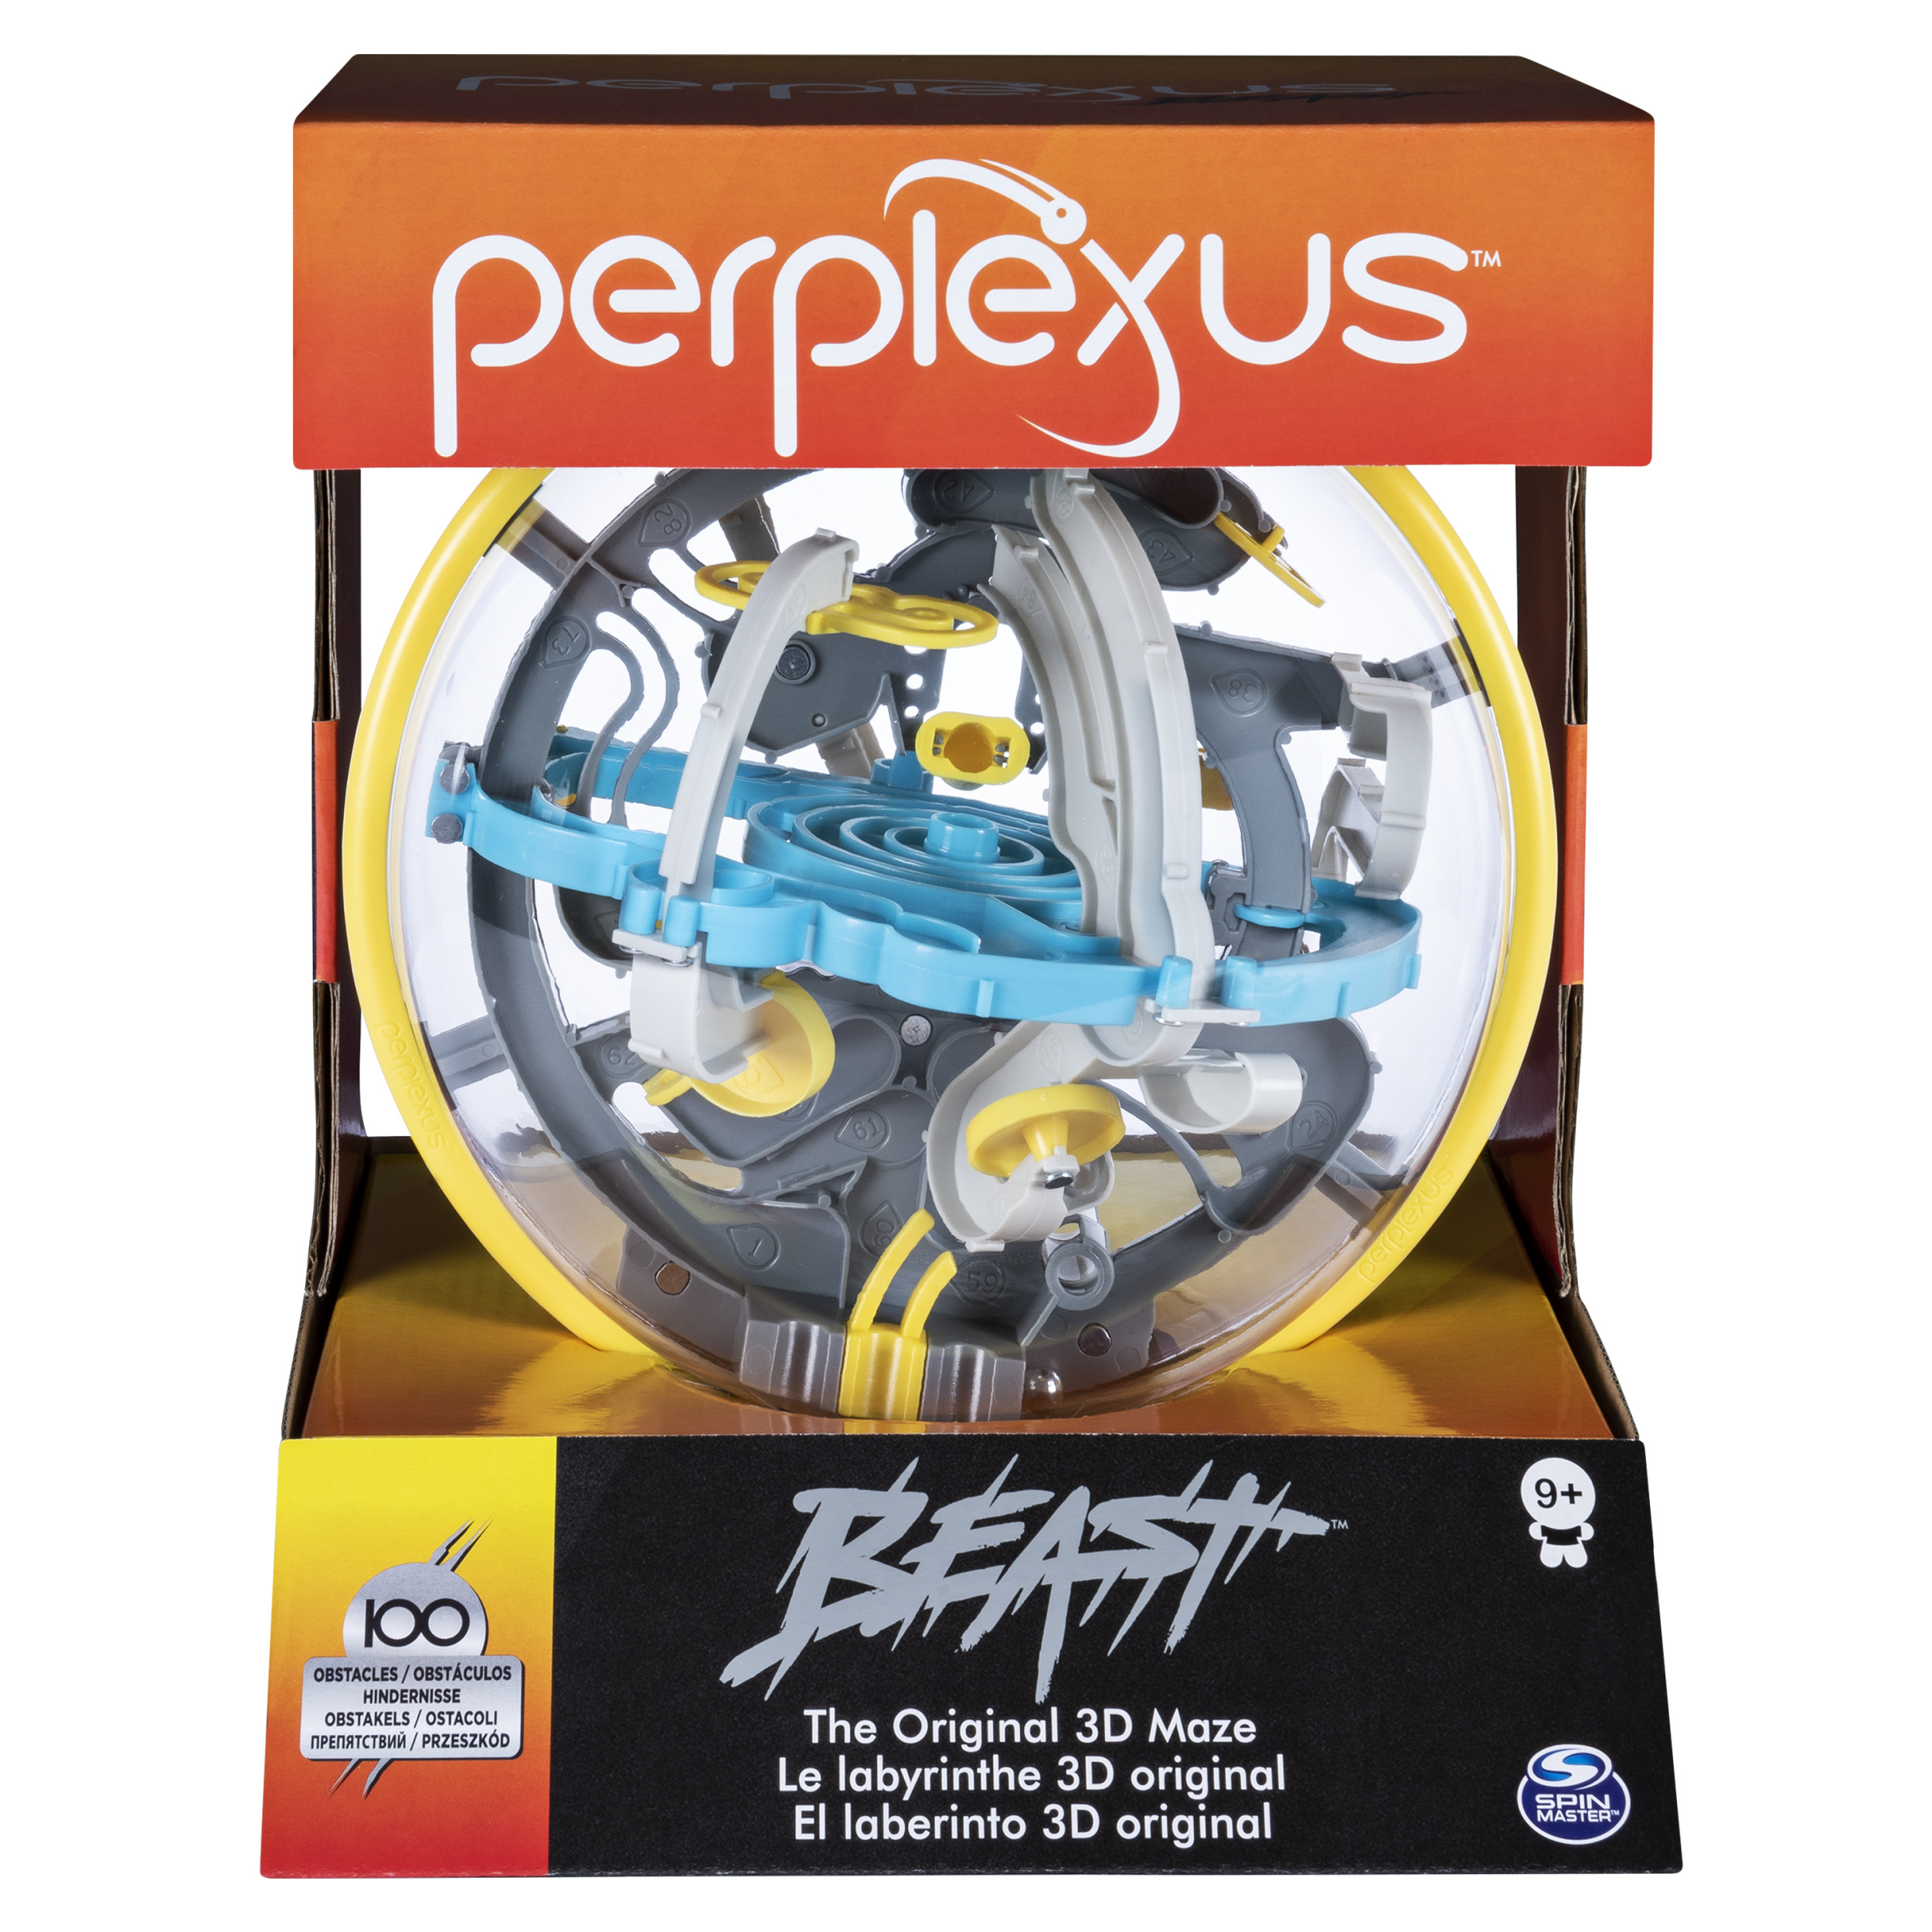 PlaSmart Toys Games Perplexus Beast - 3D-doolhofspel met 100 obstakels